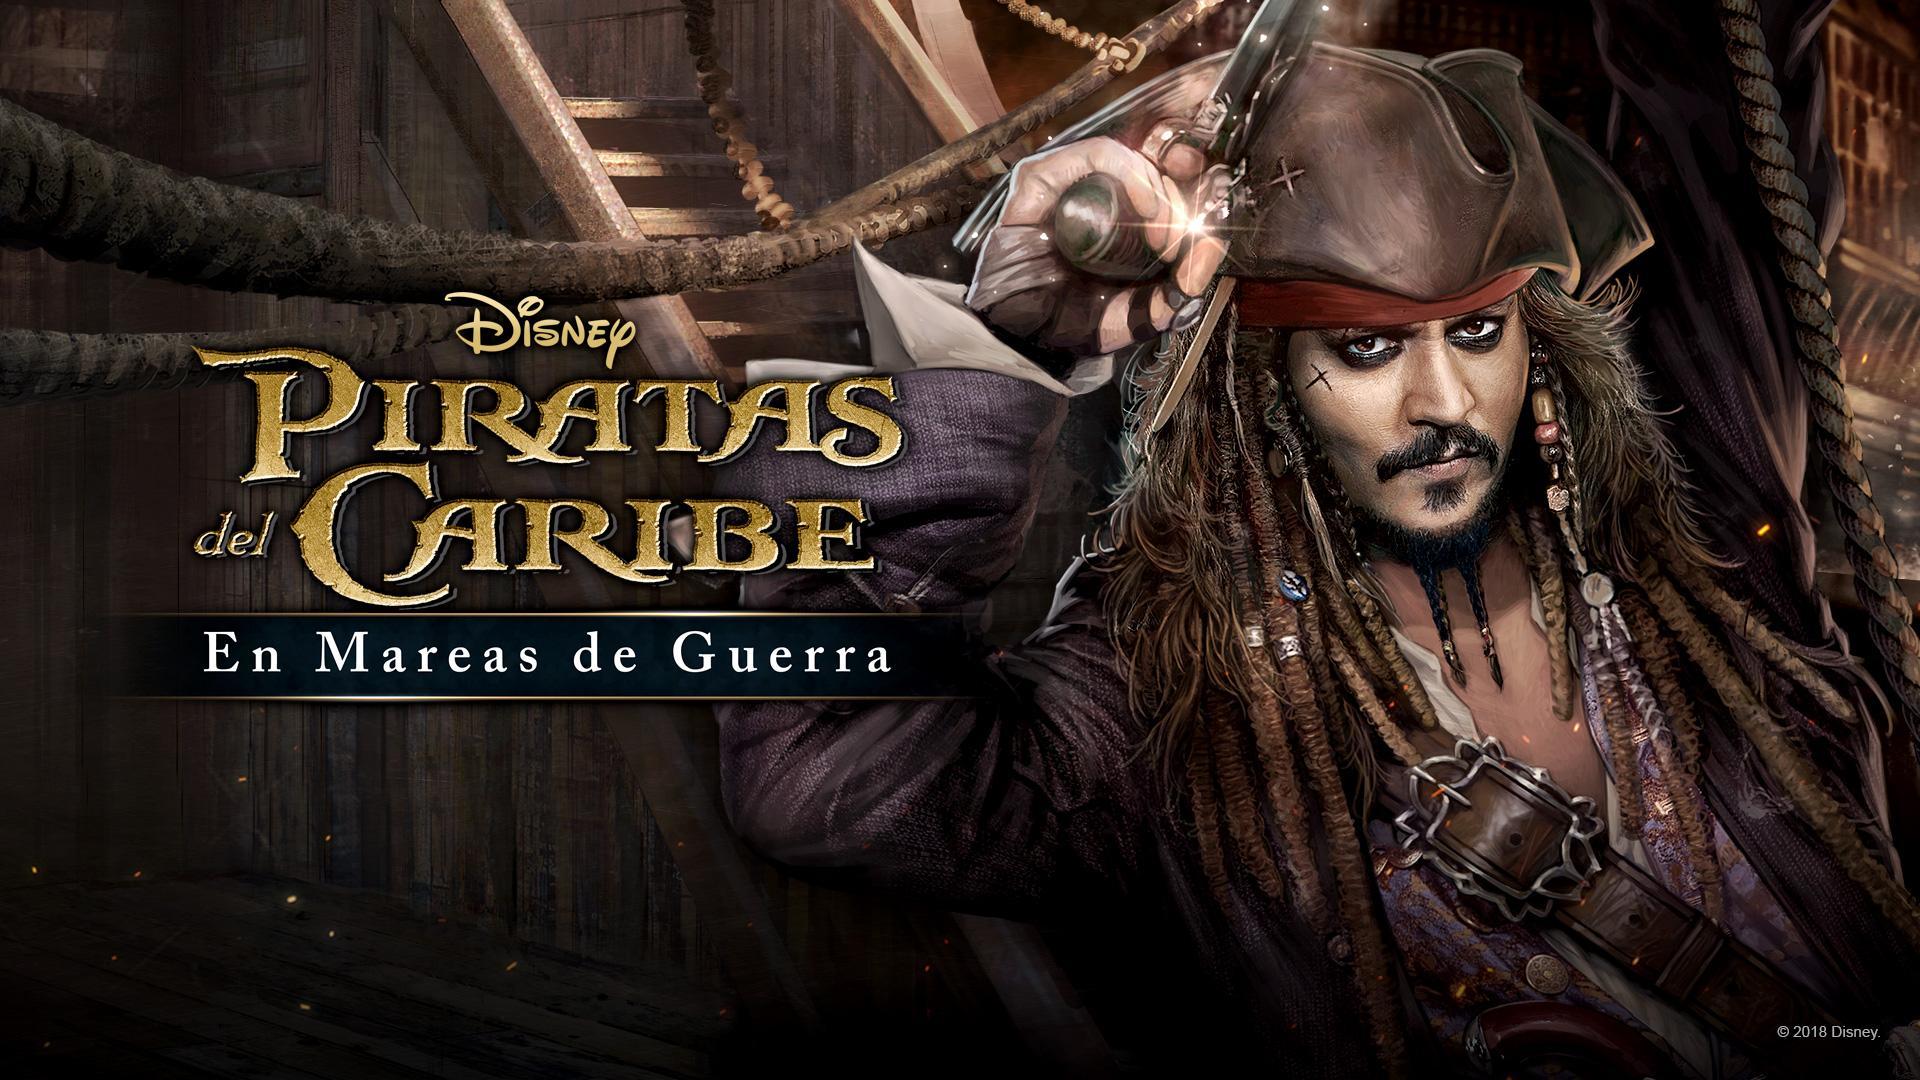 Screenshot 1 of Piratas del Caribe: marea roja 1.0.279